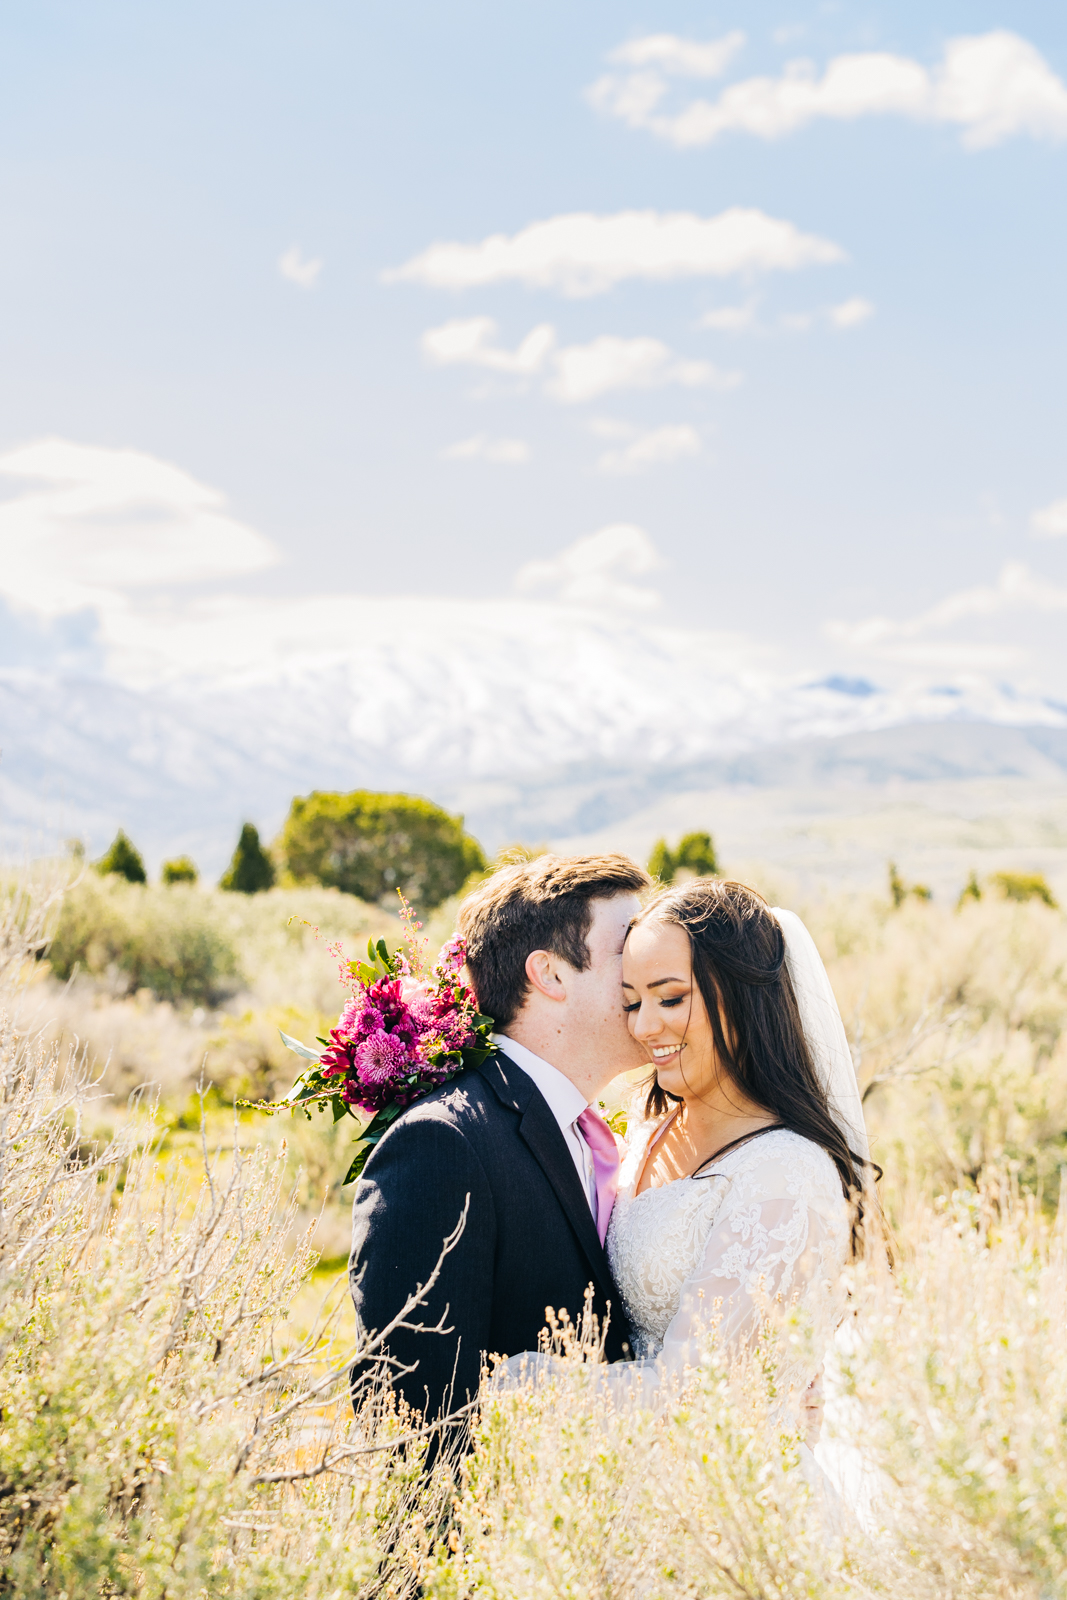 Jackson Hole wedding photographers capturecouple in sagebrush after wedding pocatello idaho